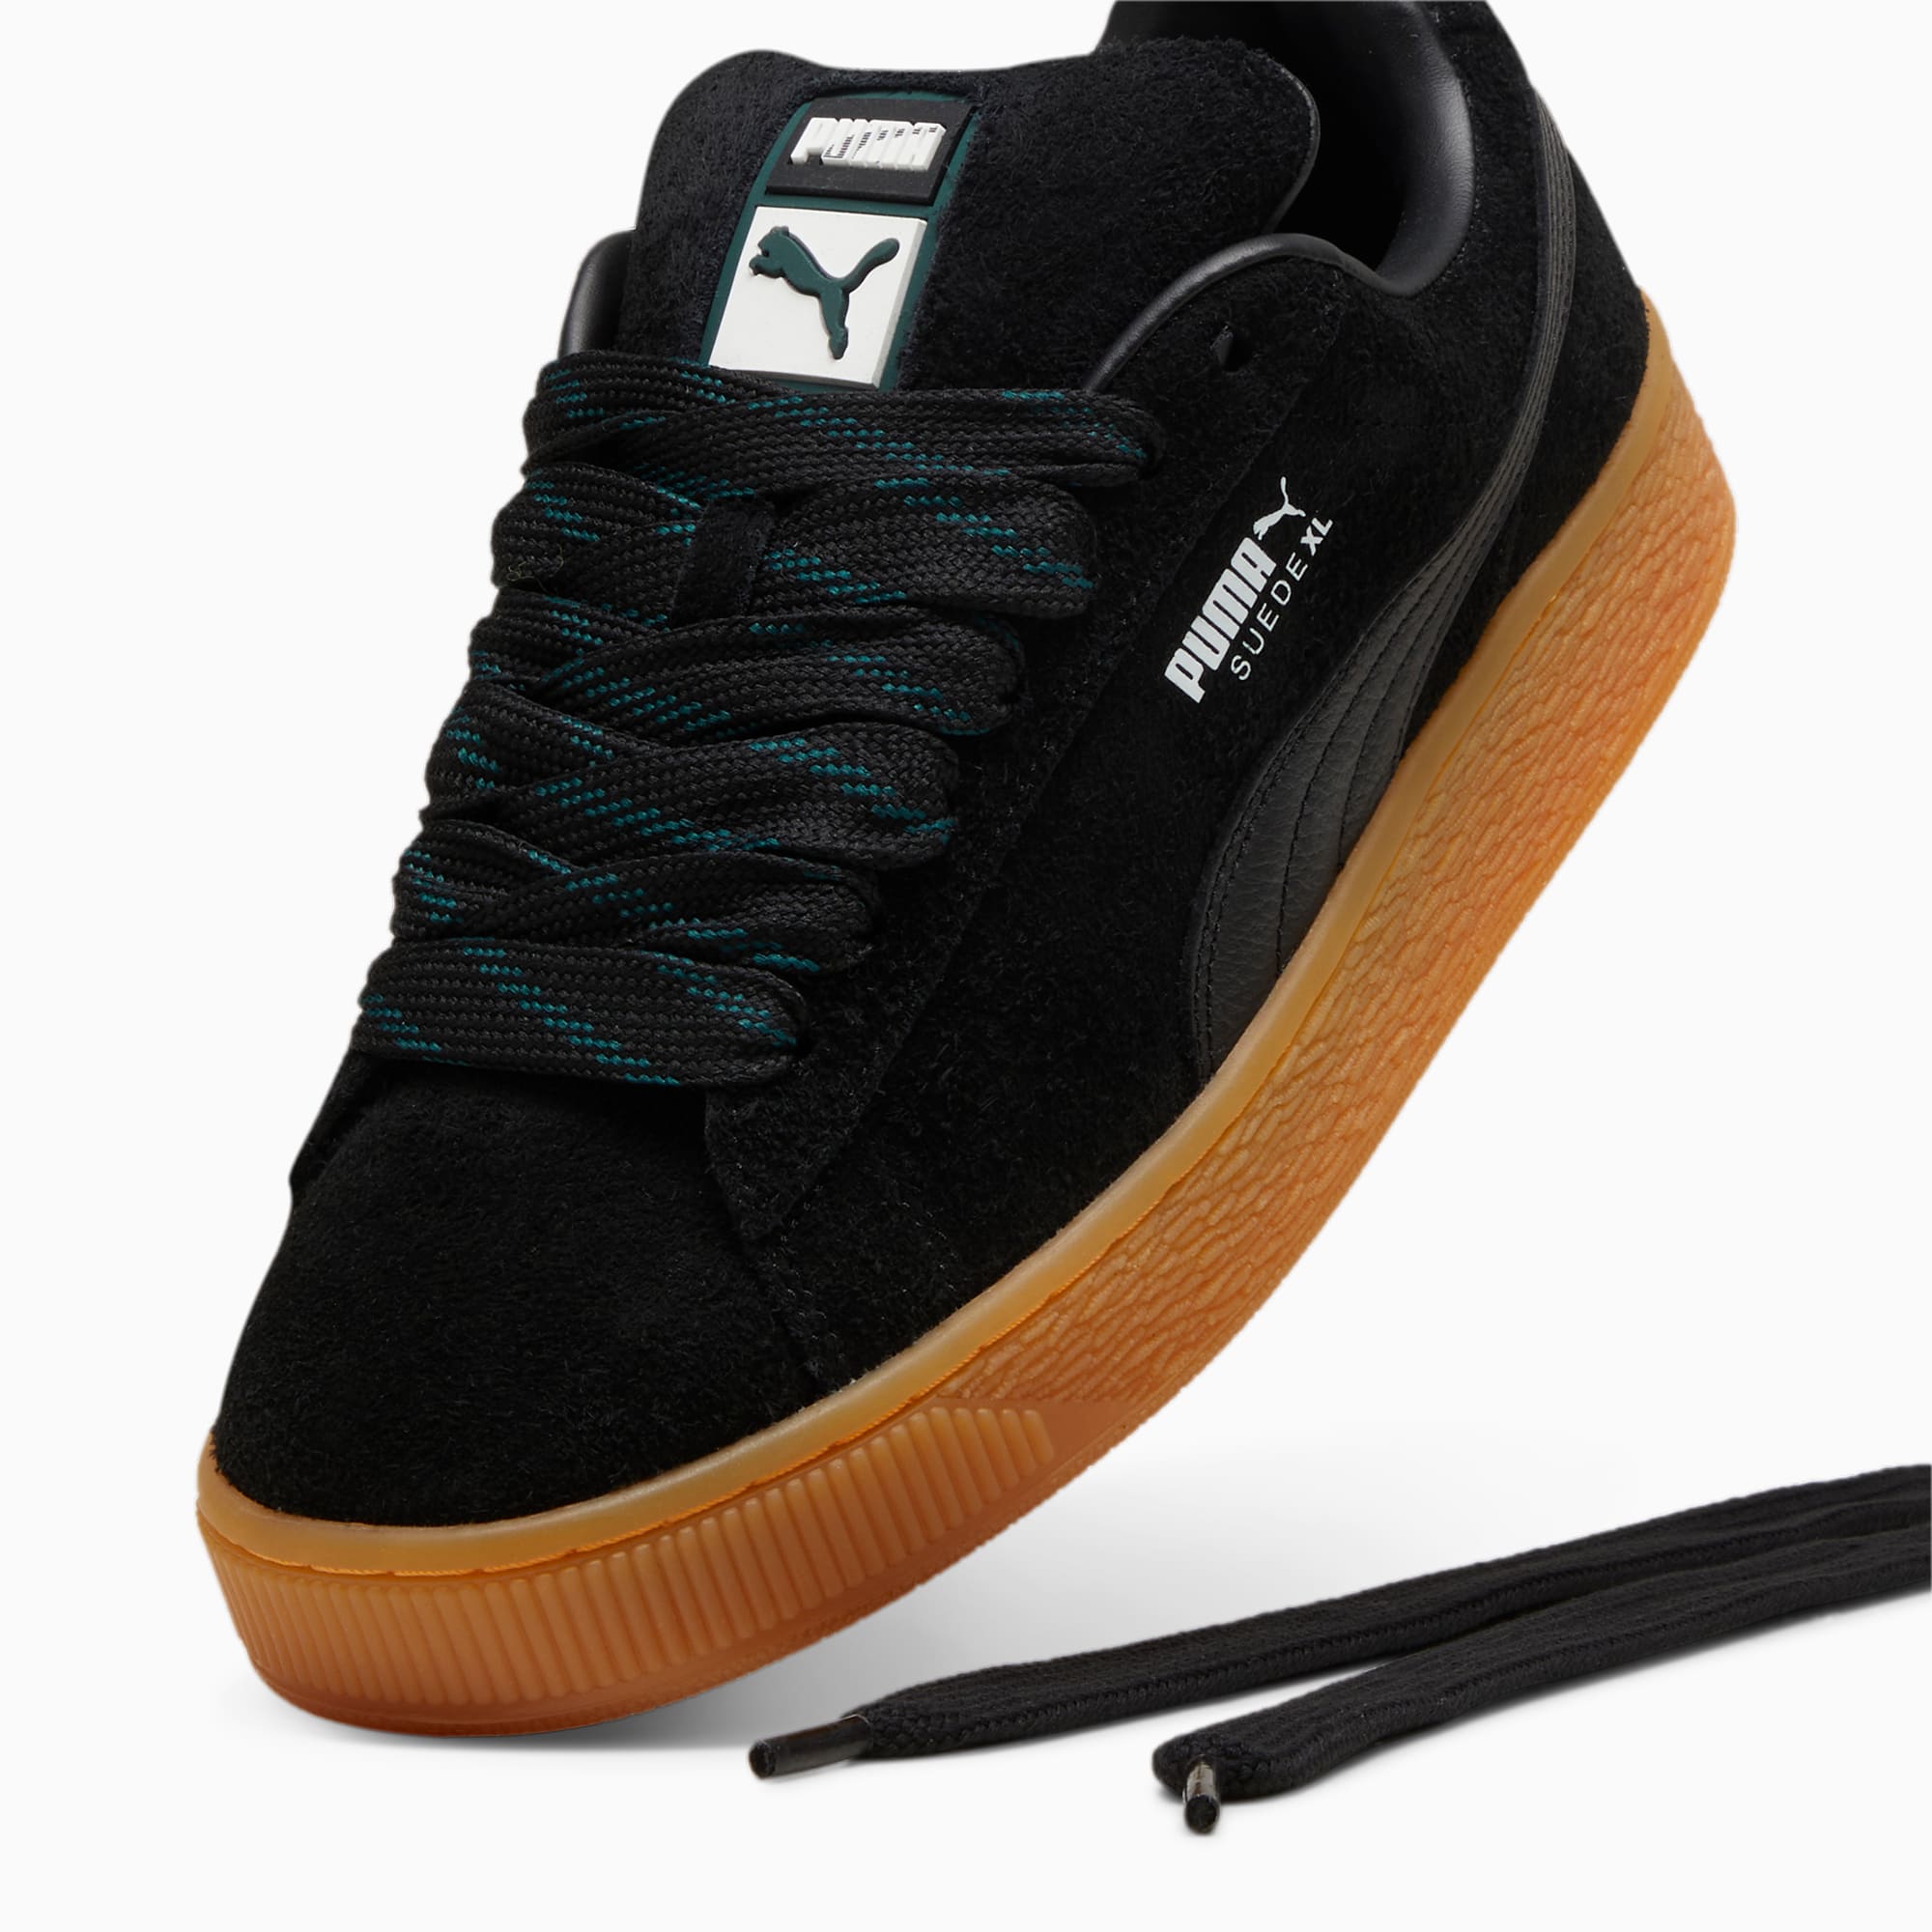 PUMA Suede XL Flecked Sneakers Unisex Schuhe, Schwarz/Grün, Größe: 48, Schuhe